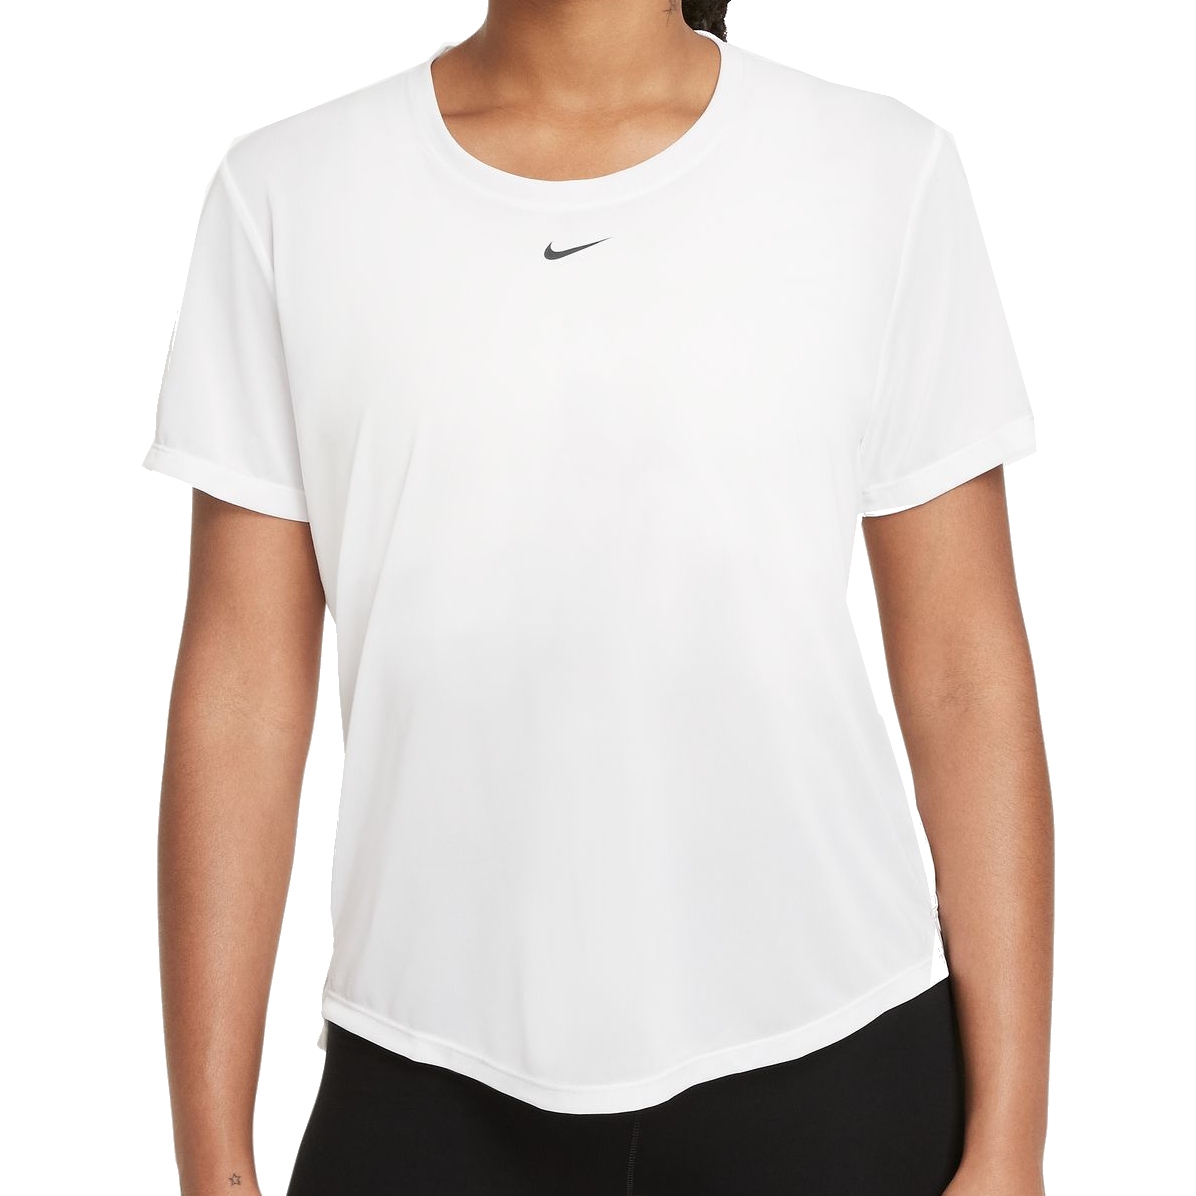 Immagine prodotto da Nike Maglietta Donna - Dri-Fit One Standard Fit - bianco/nero DD0638-100